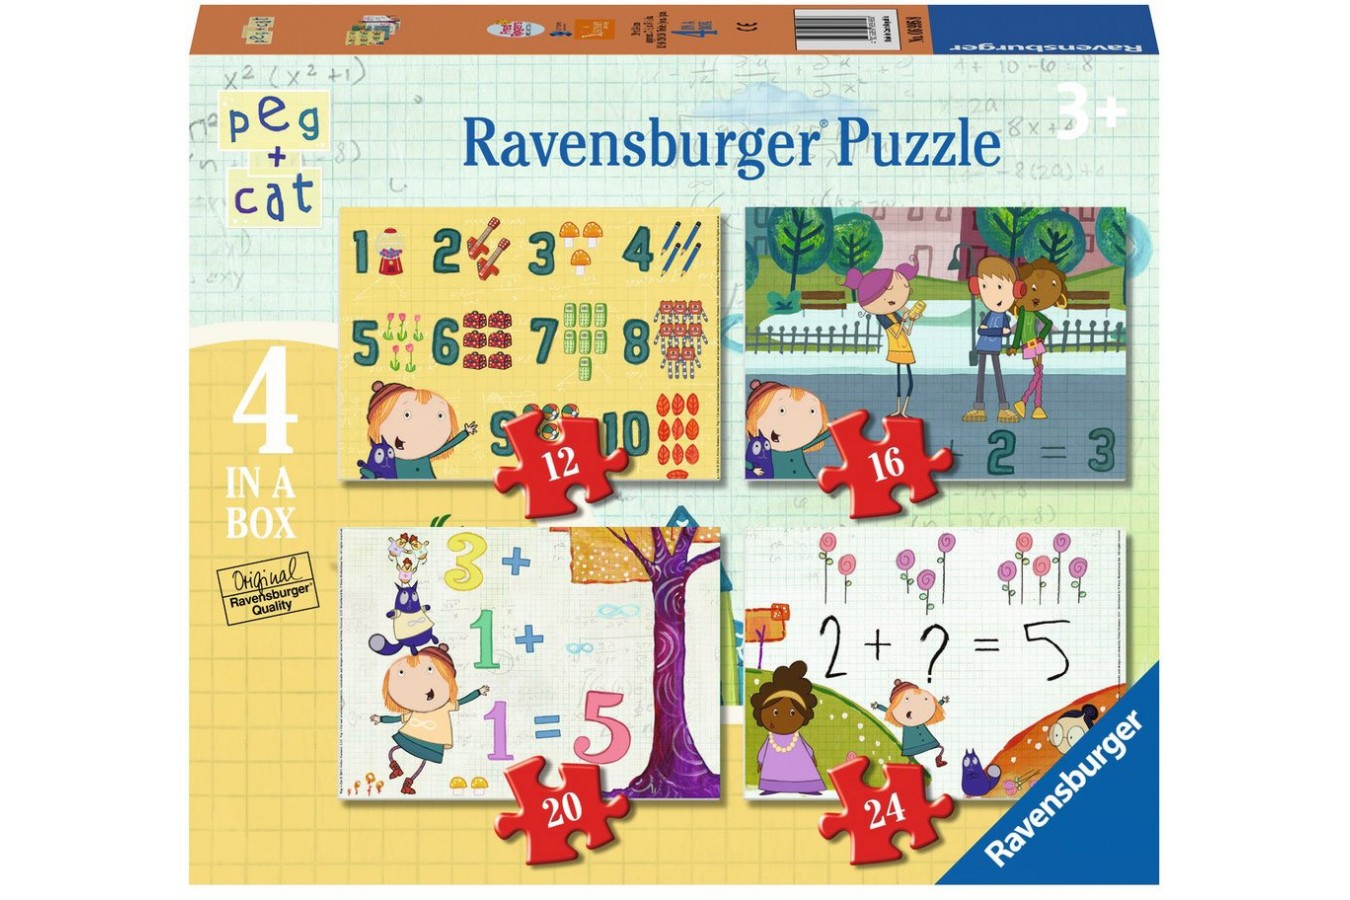 Puzzle Ravensburger - Peg + Cat, 12/16/20/24 piese (06995)